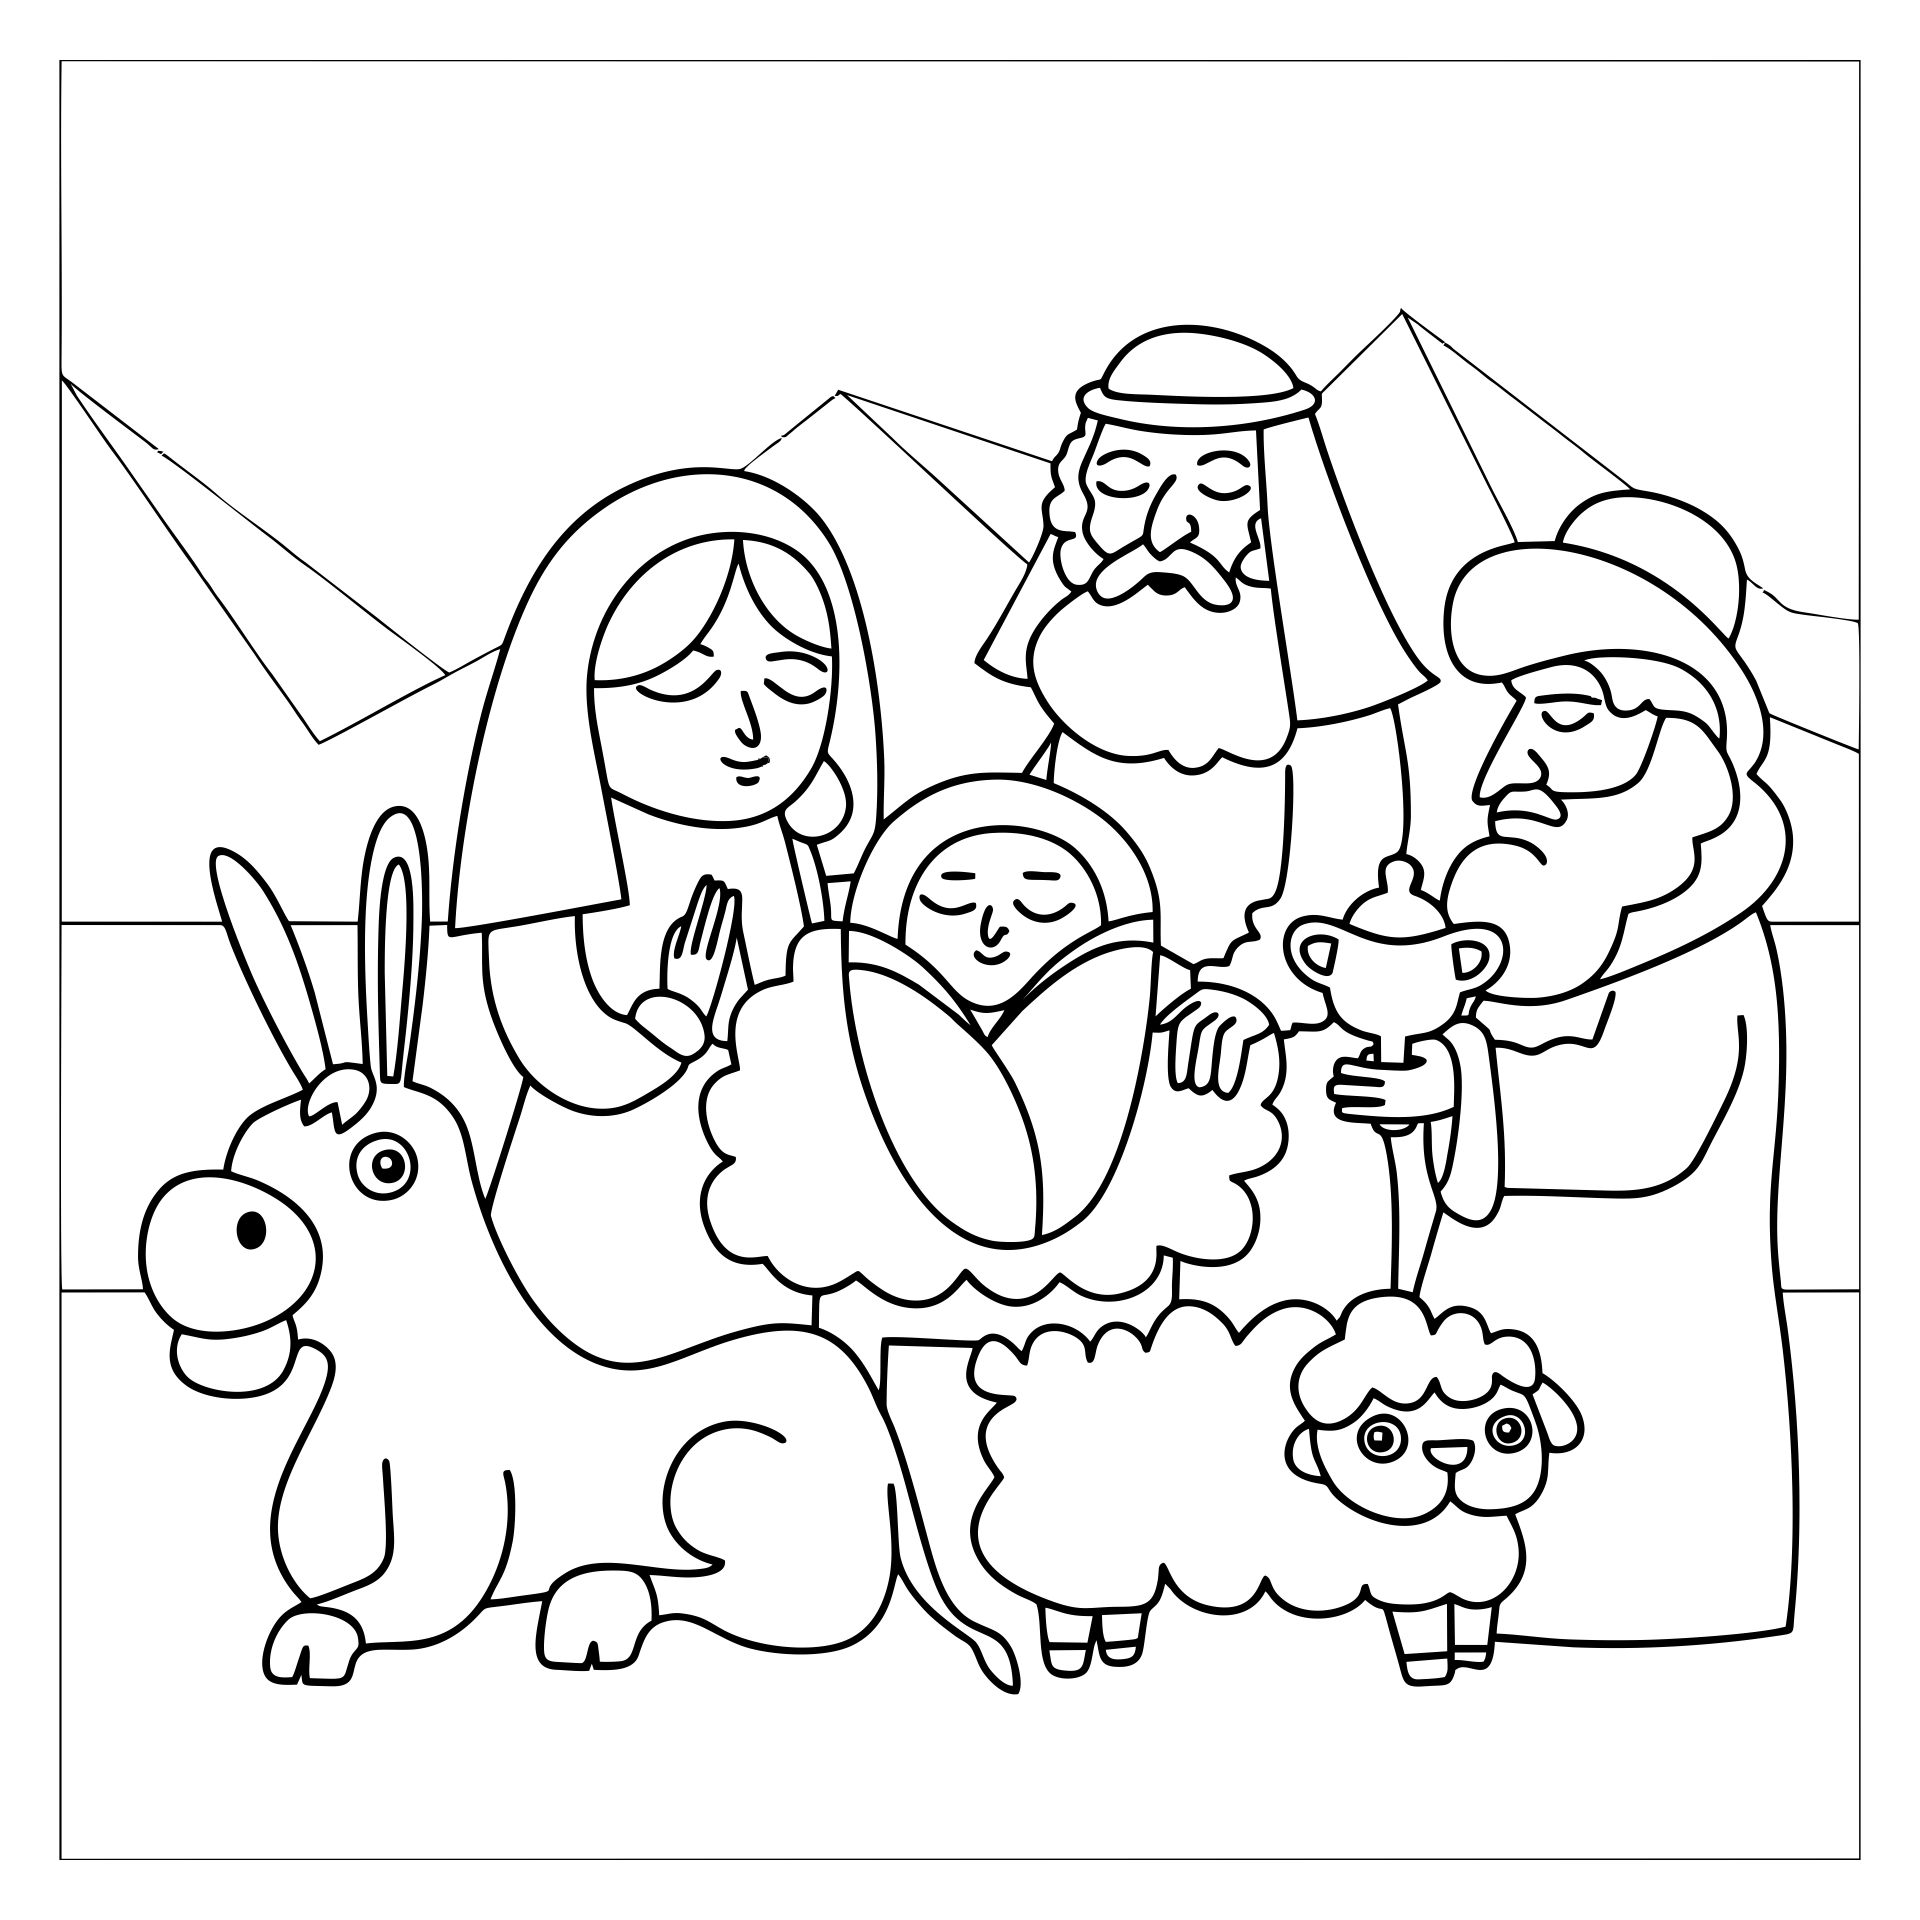 coloring-book-nativity-scene-free-printable-nativity-scene-coloring